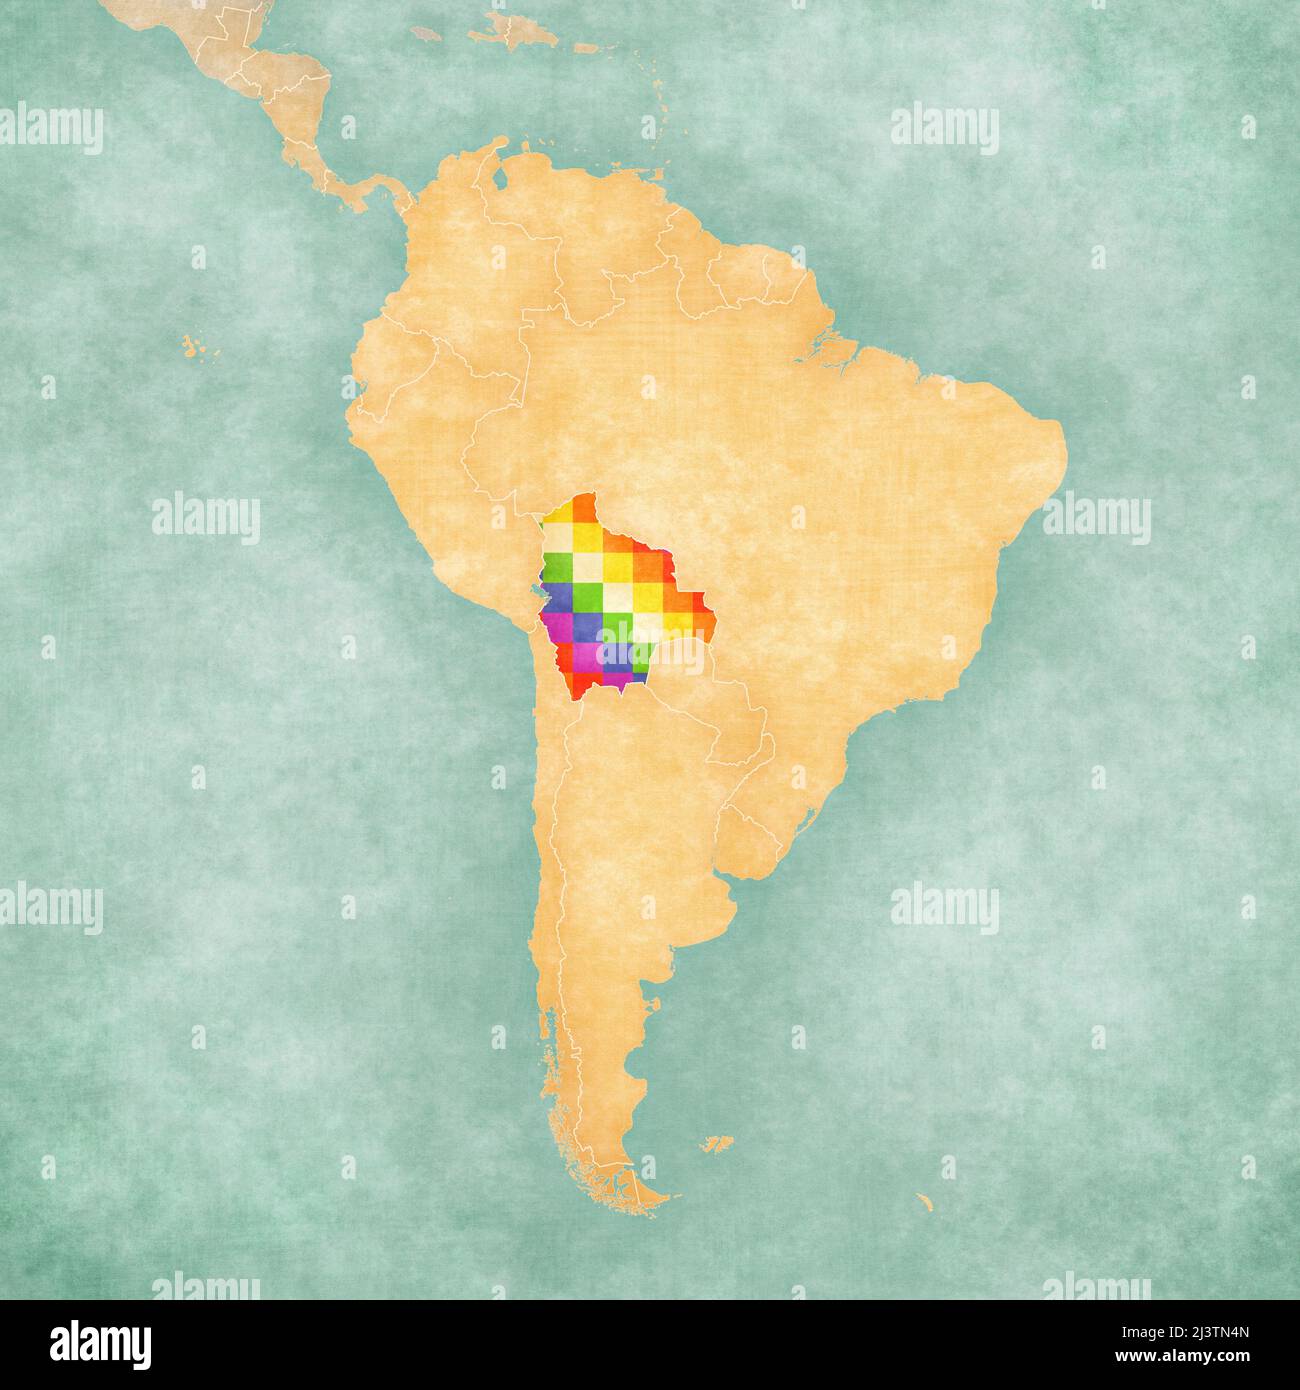 Bolivie (bannière Wiphala) sur la carte de l'Amérique du Sud. La carte est dans un style vintage d'été et d'humeur ensoleillée. La carte a un grunge doux et millésime Banque D'Images